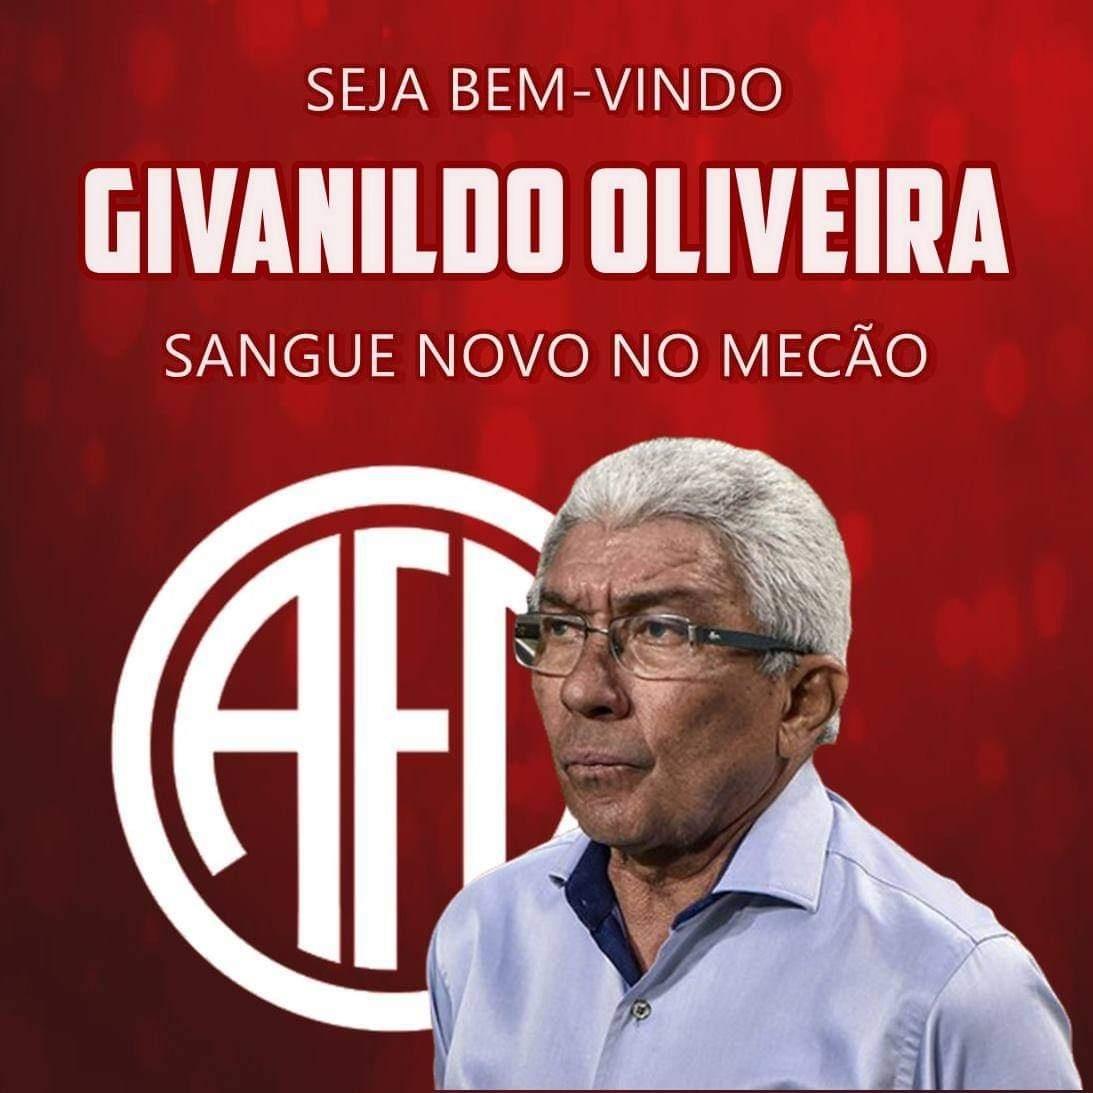 Jaiminho deixa comando técnico do GD Pedralva - Diário do Minho